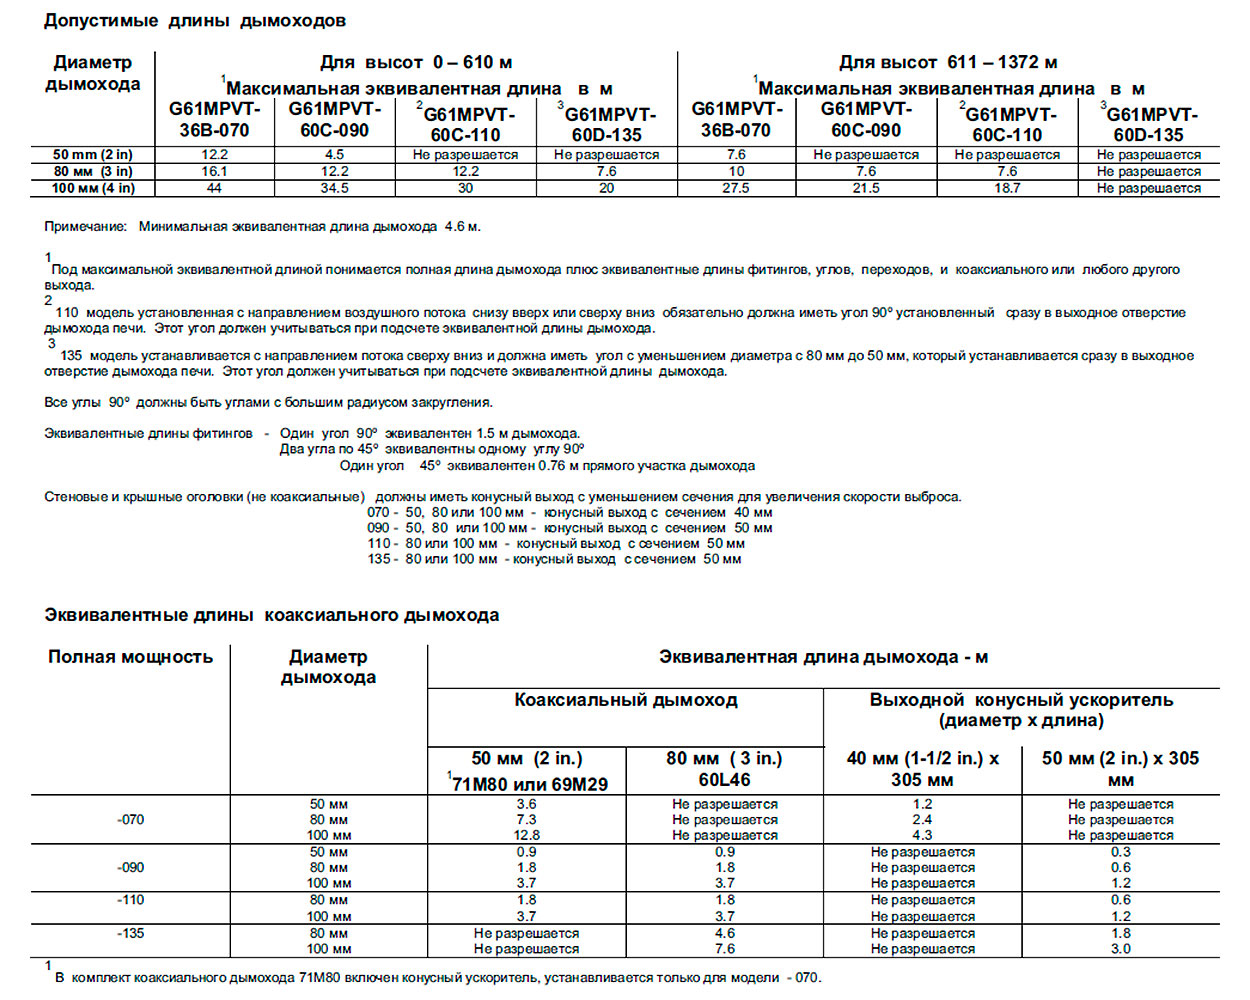 Характеристики дымоходов для газовых печей воздушного отопления Lennox серии G61MPVT